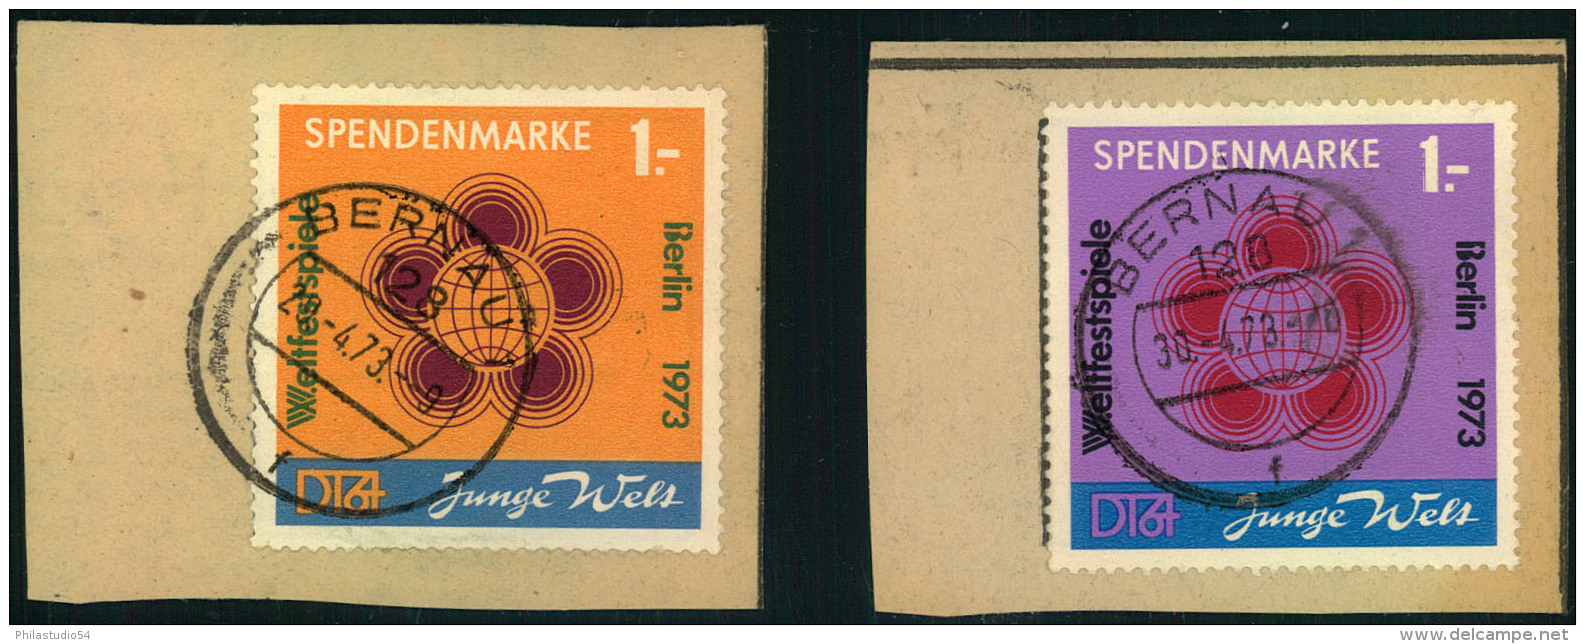 1973, Beide Spendenmarken Glasklar Gestempelt ""BERNAU"" Auf Briefstücken - Oshawa